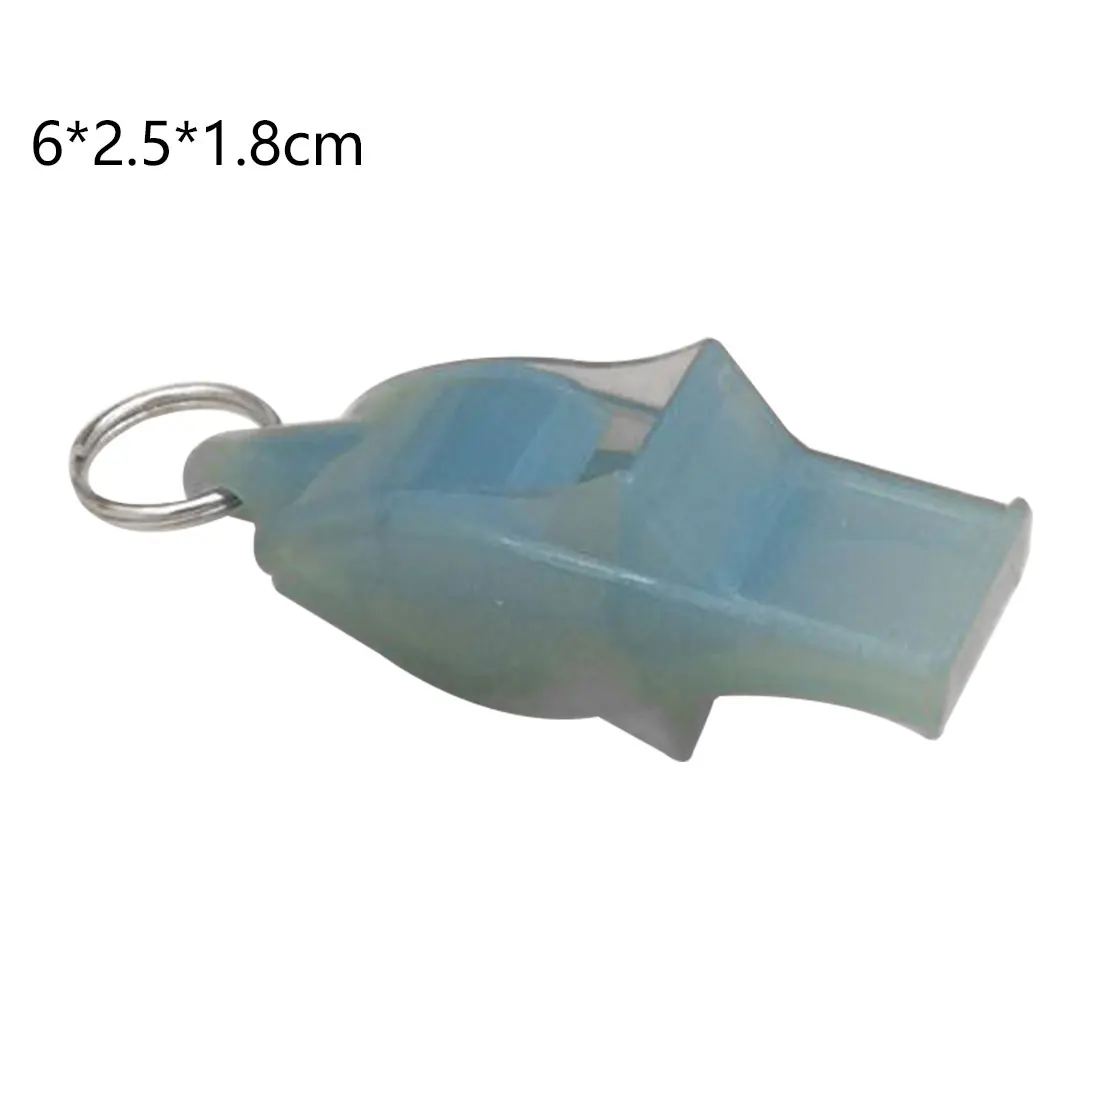 1 шт. пластиковый свисток Американский Футбол Баскетбол Хоккей Бейсбол Спортивный рефери свисток кемпинг на открытом воздухе выживания с шнурком - Цвет: Water Blue